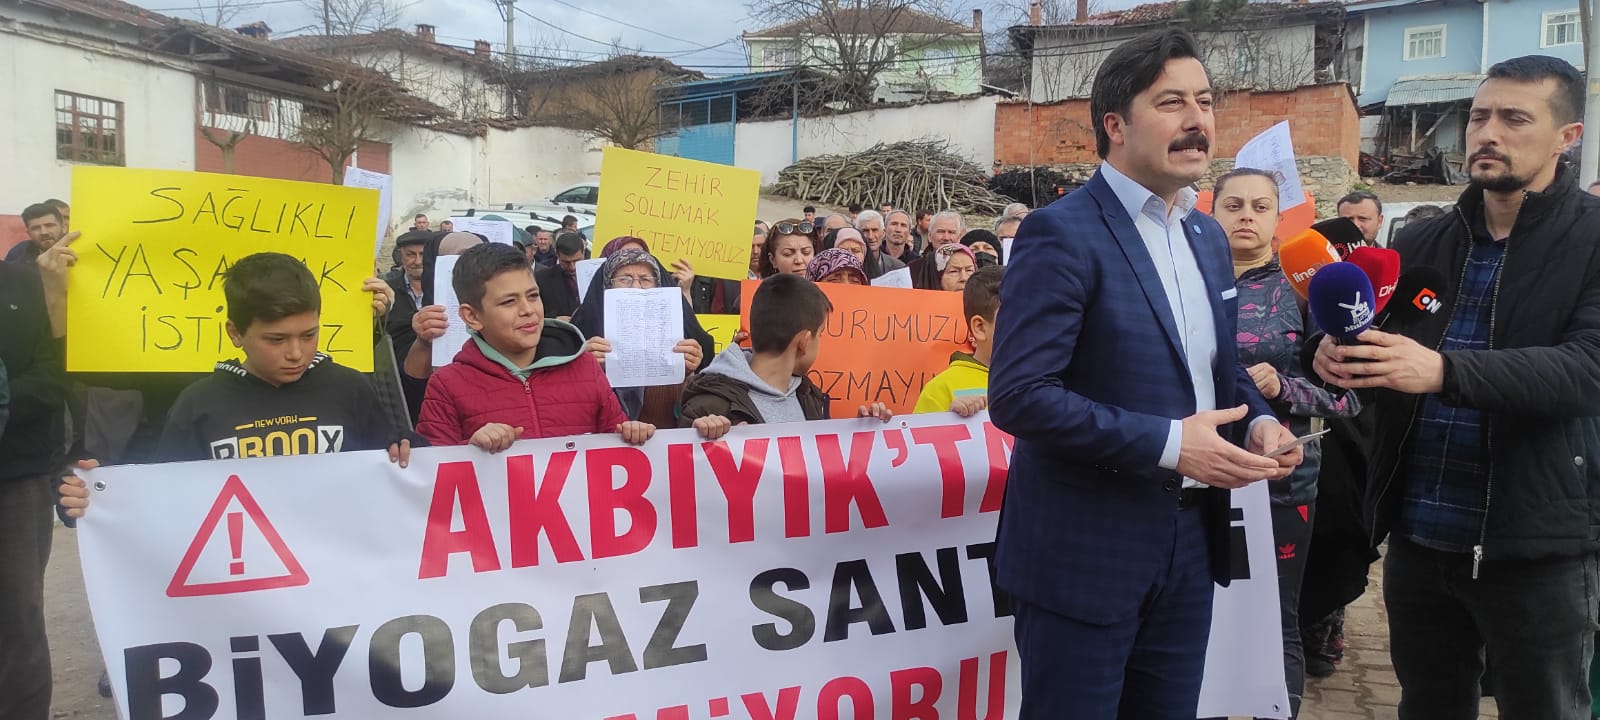 İYİ Parti Yenişehir İlçe Başkanlığı'ndan basın açıklaması